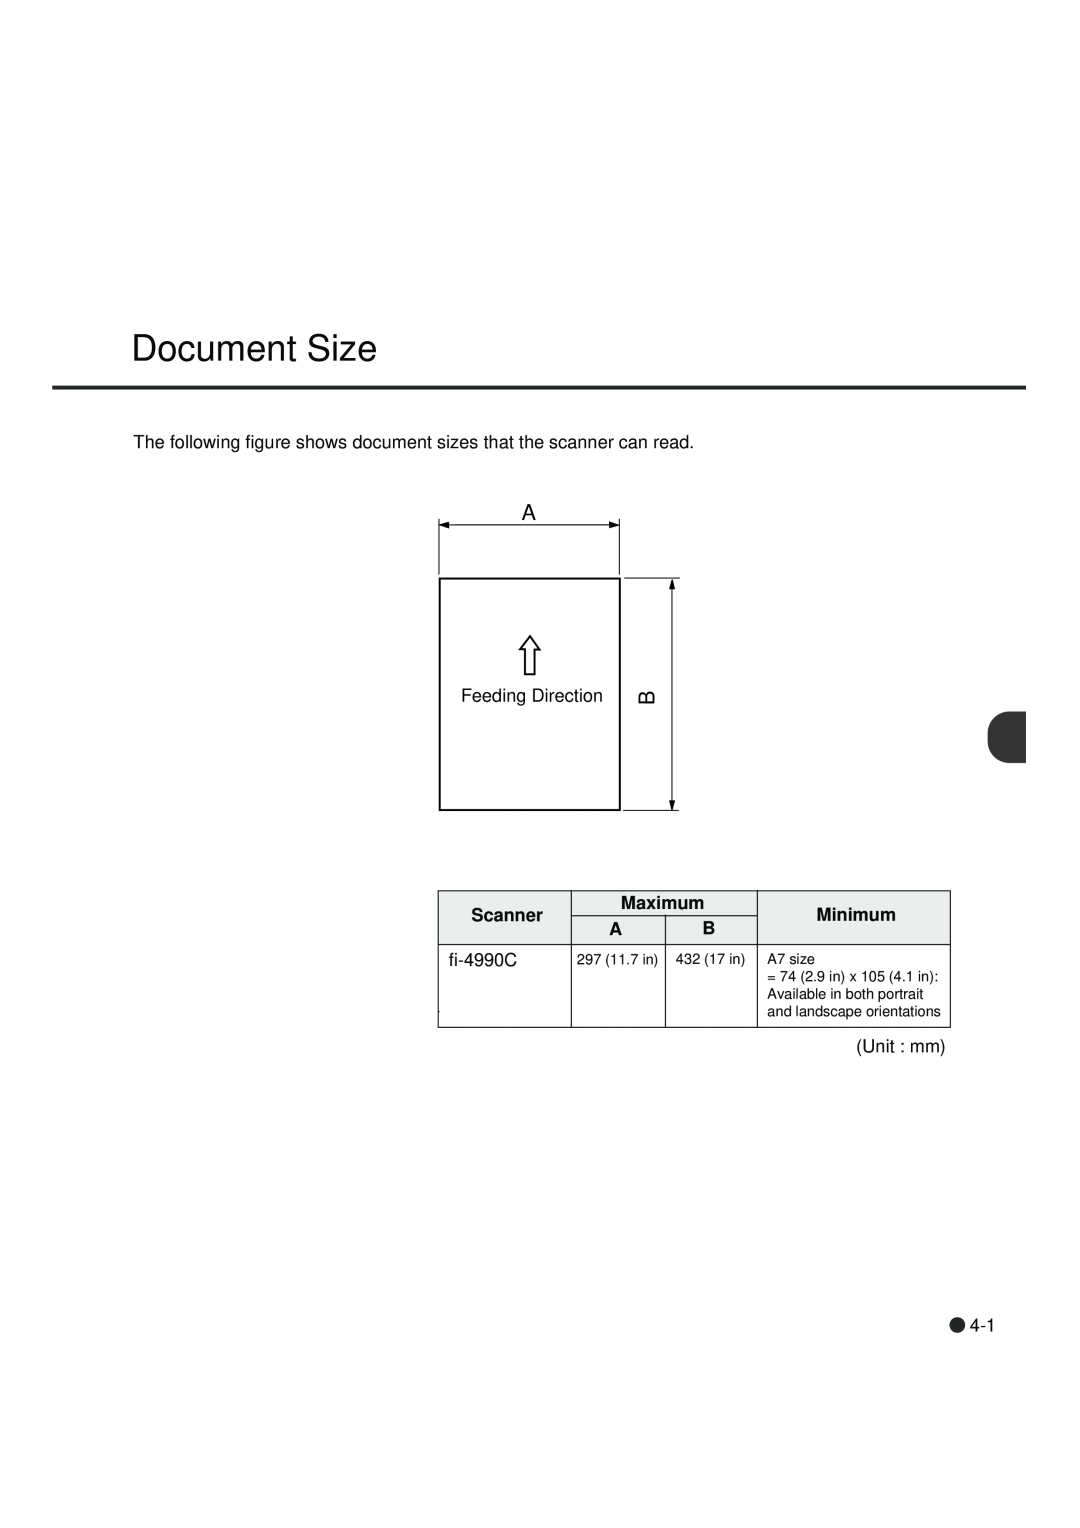 Fujitsu fi-4990C manual Document Size, Scanner, Maximum, Minimum, Unit mm, 297 11.7 in, 432 17 in 